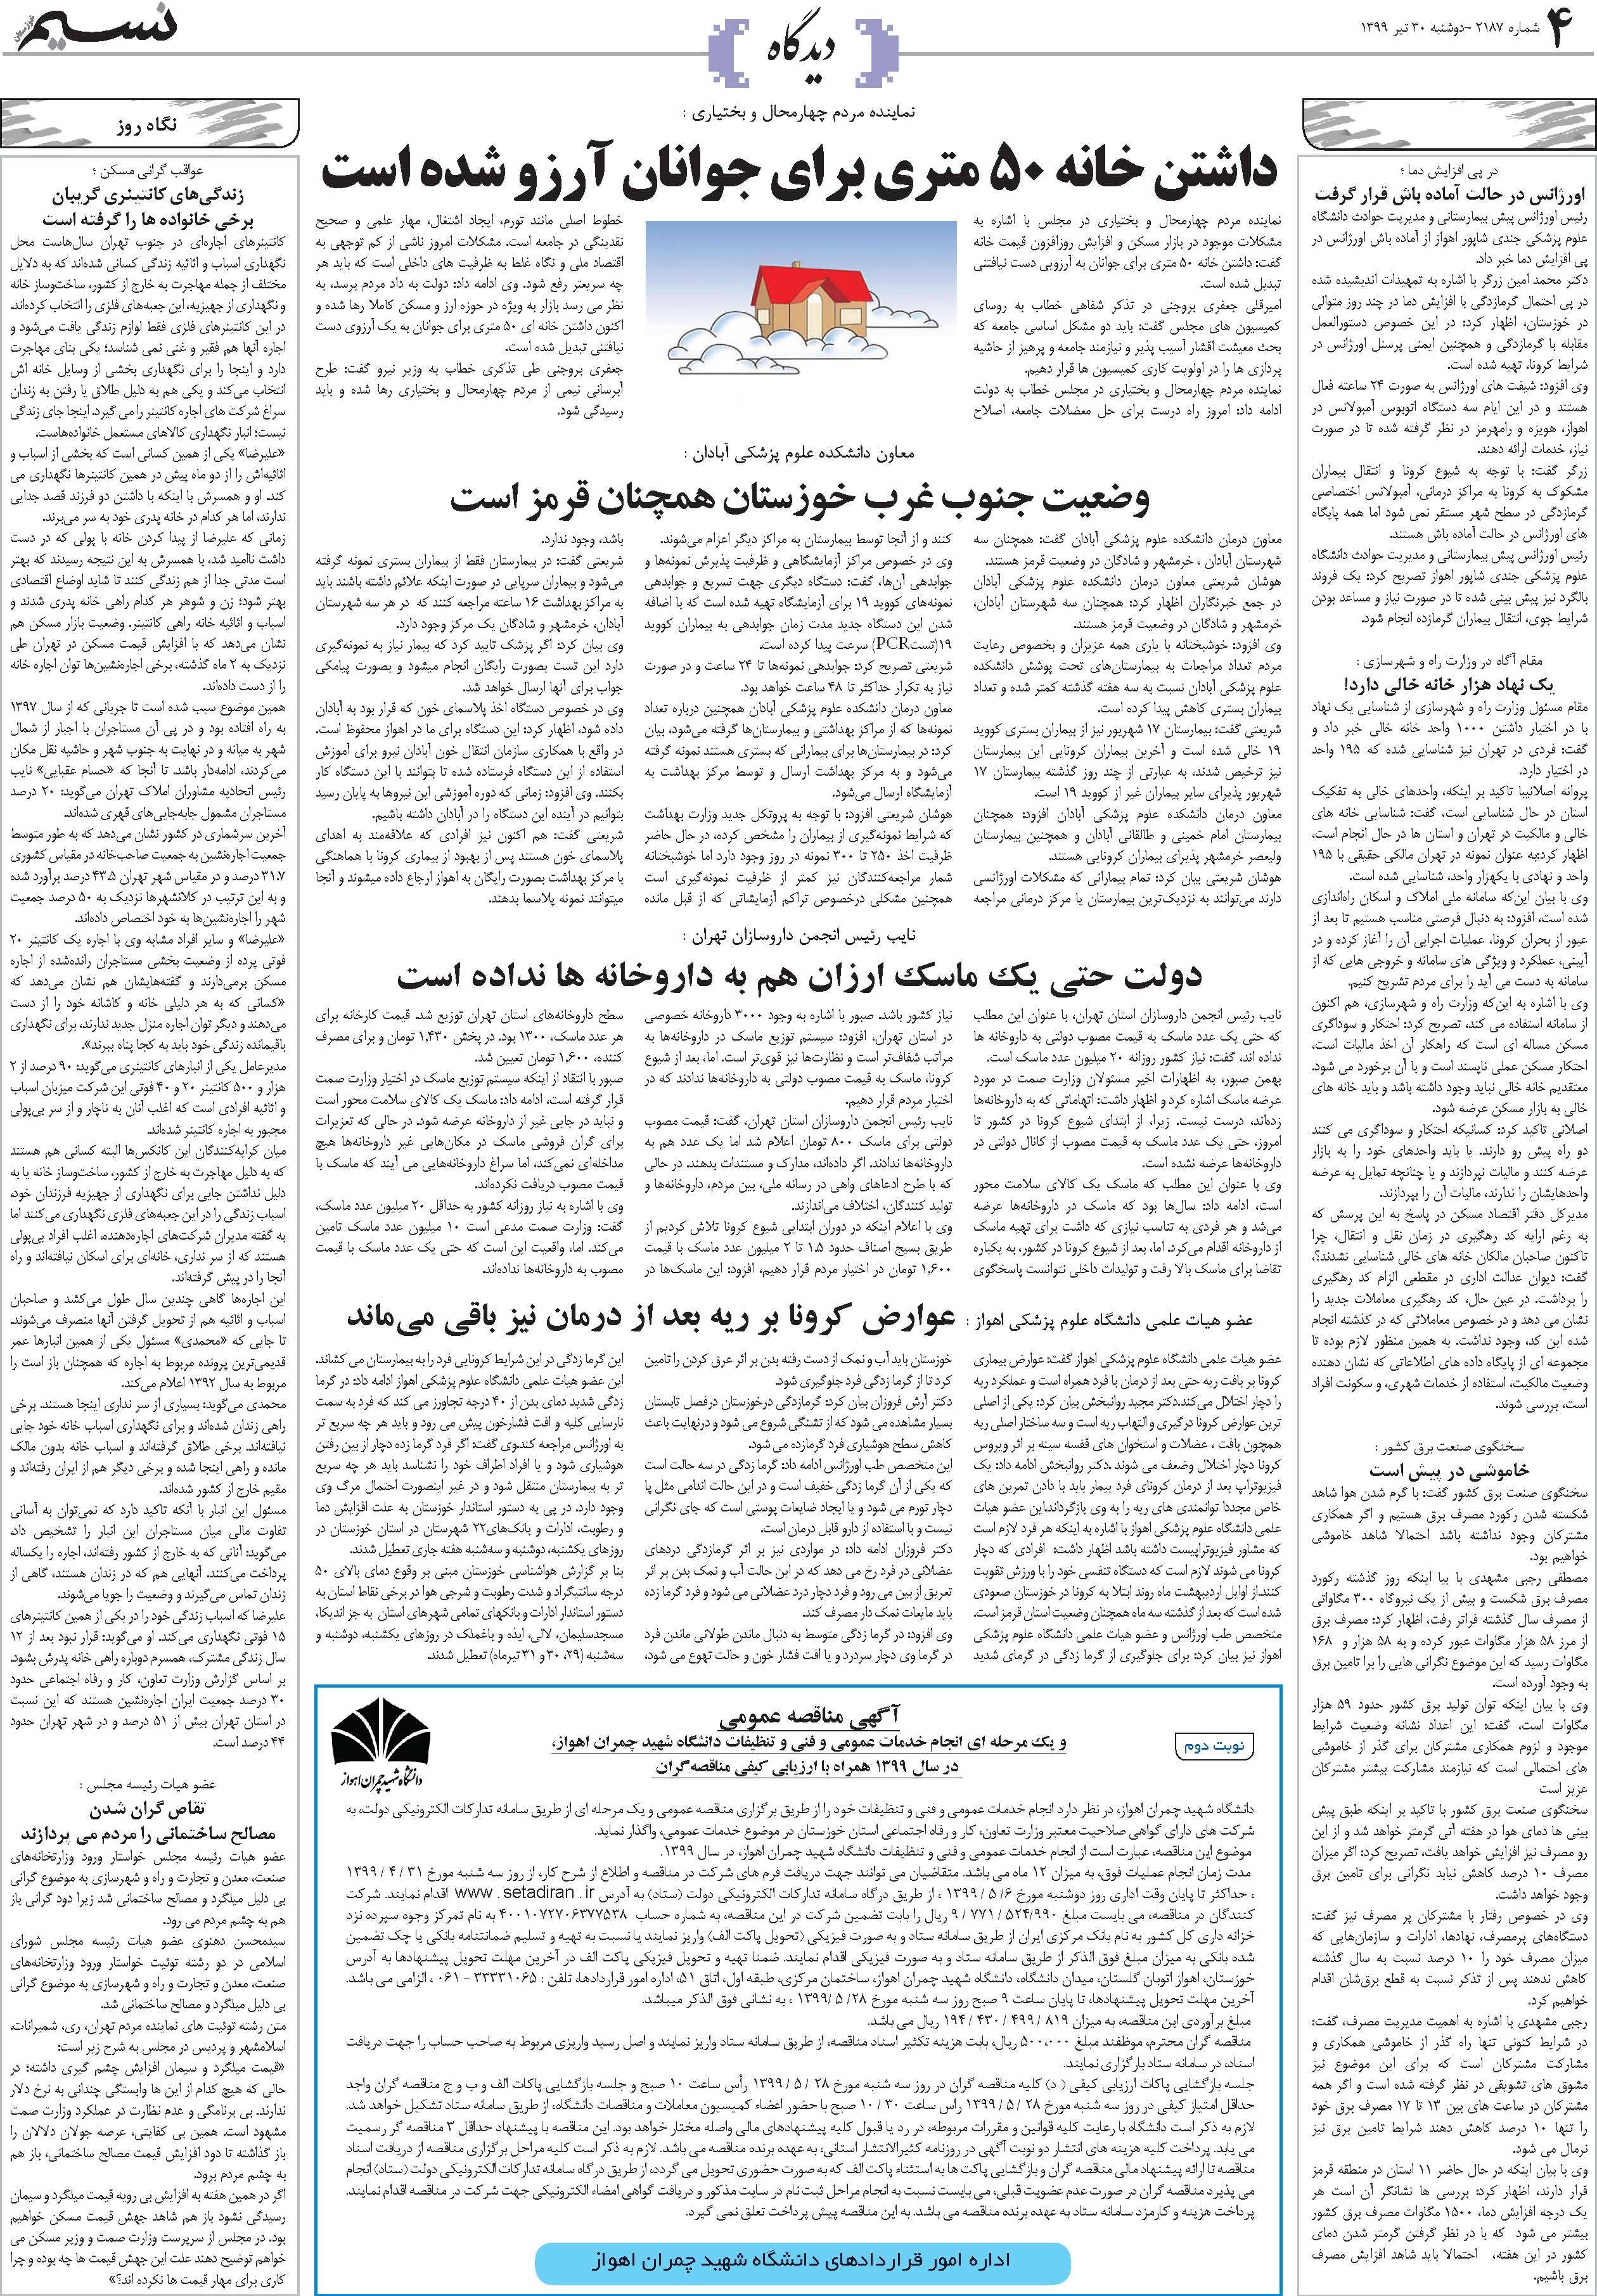 صفحه دیدگاه روزنامه نسیم شماره 2187